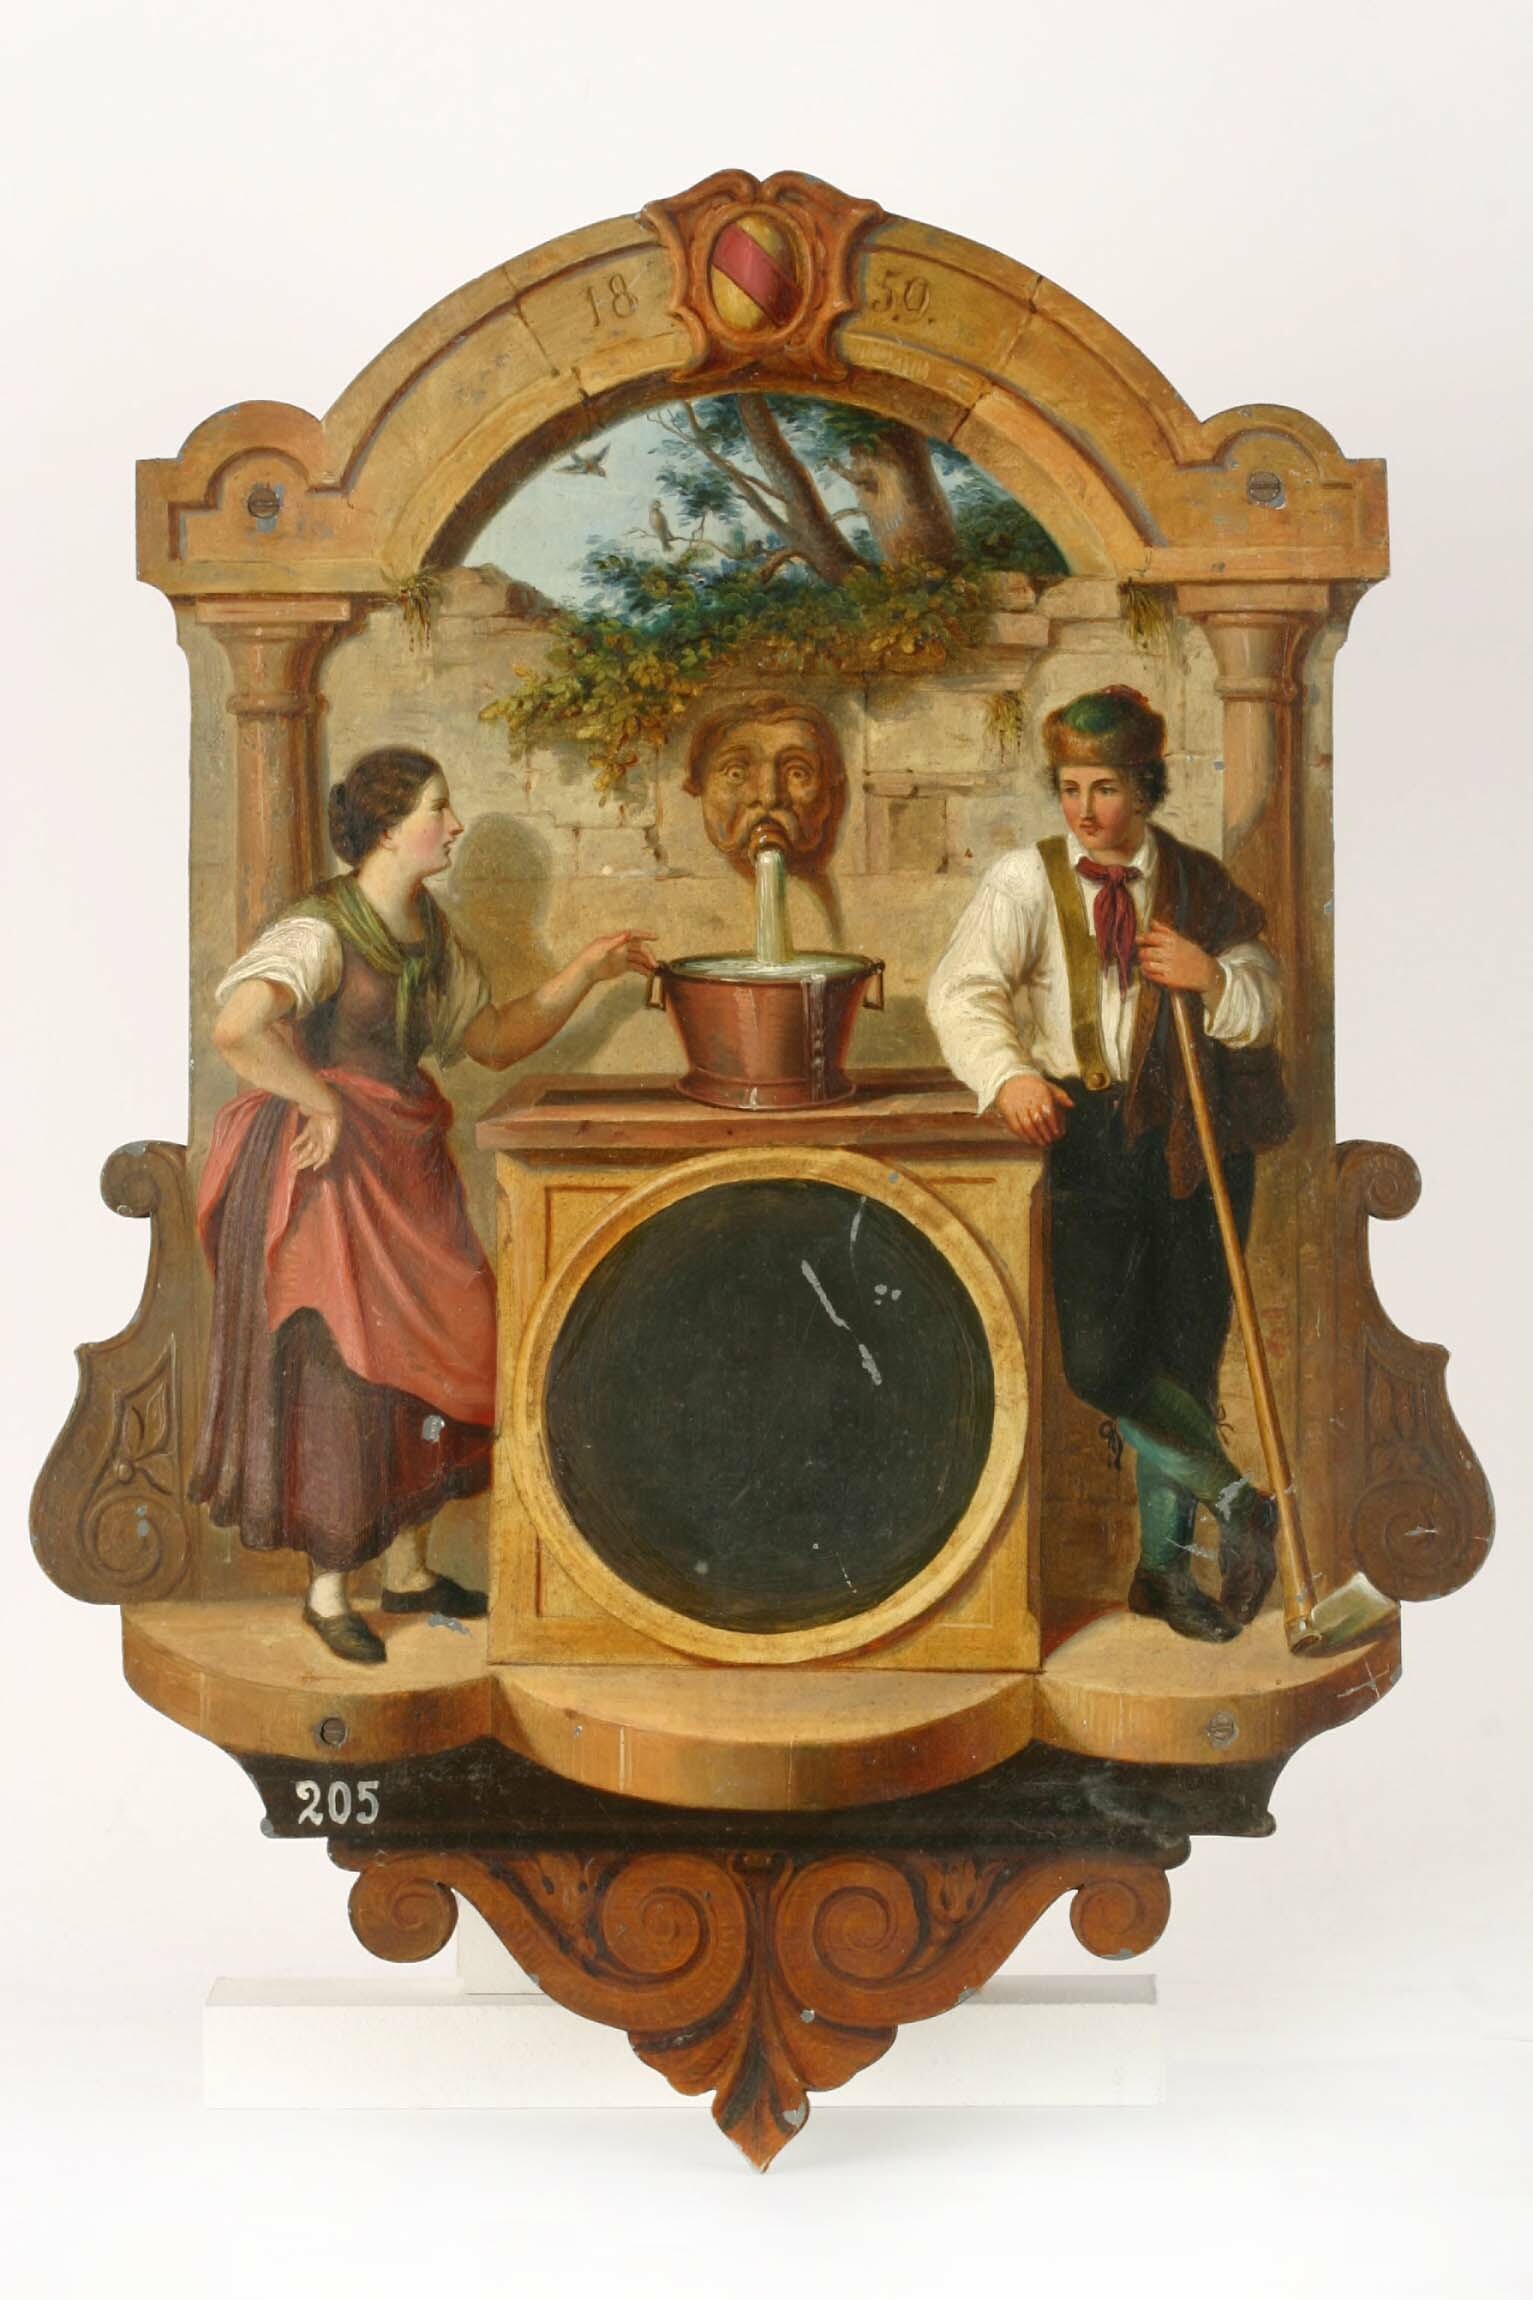 Mustergehäuse, Uhrmacherschule Furtwangen, Lucian Reich, Johann Baptist Laule, Hüfingen, Furtwangen, 1859 (Deutsches Uhrenmuseum CC BY-SA)